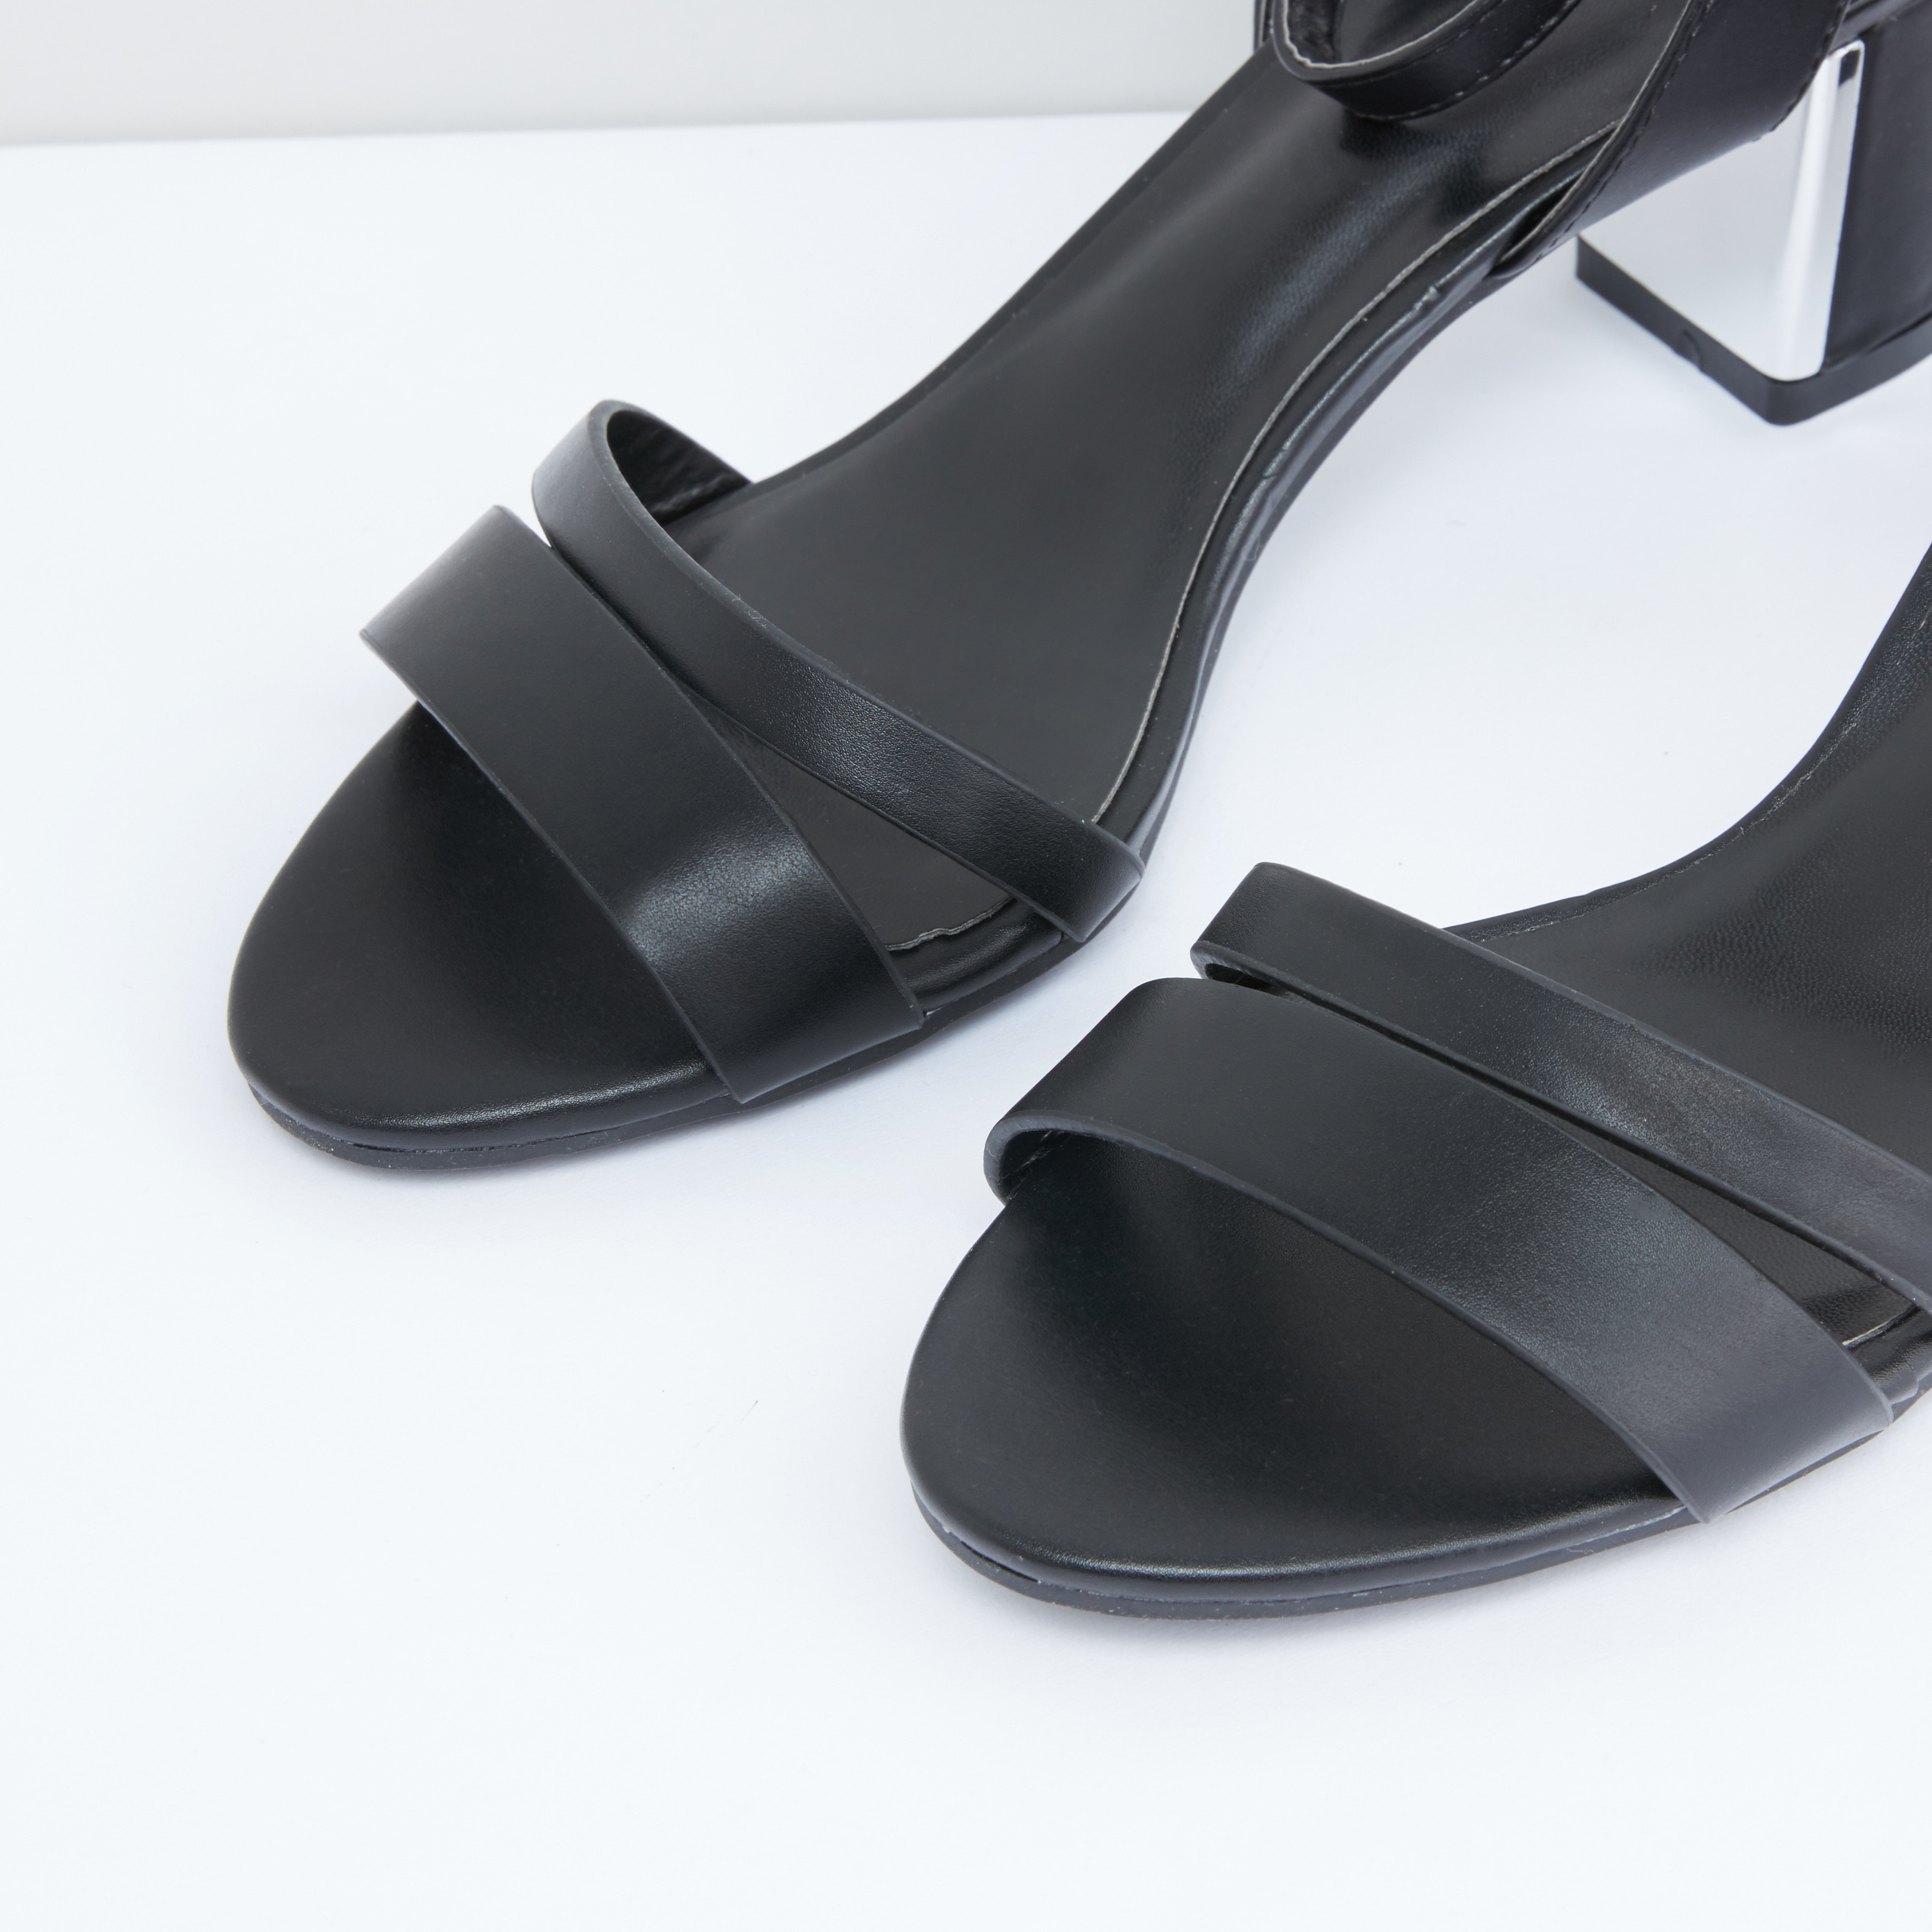 LOLLA BLACK High Heels | Buy Women's HEELS Online | Novo Shoes NZ